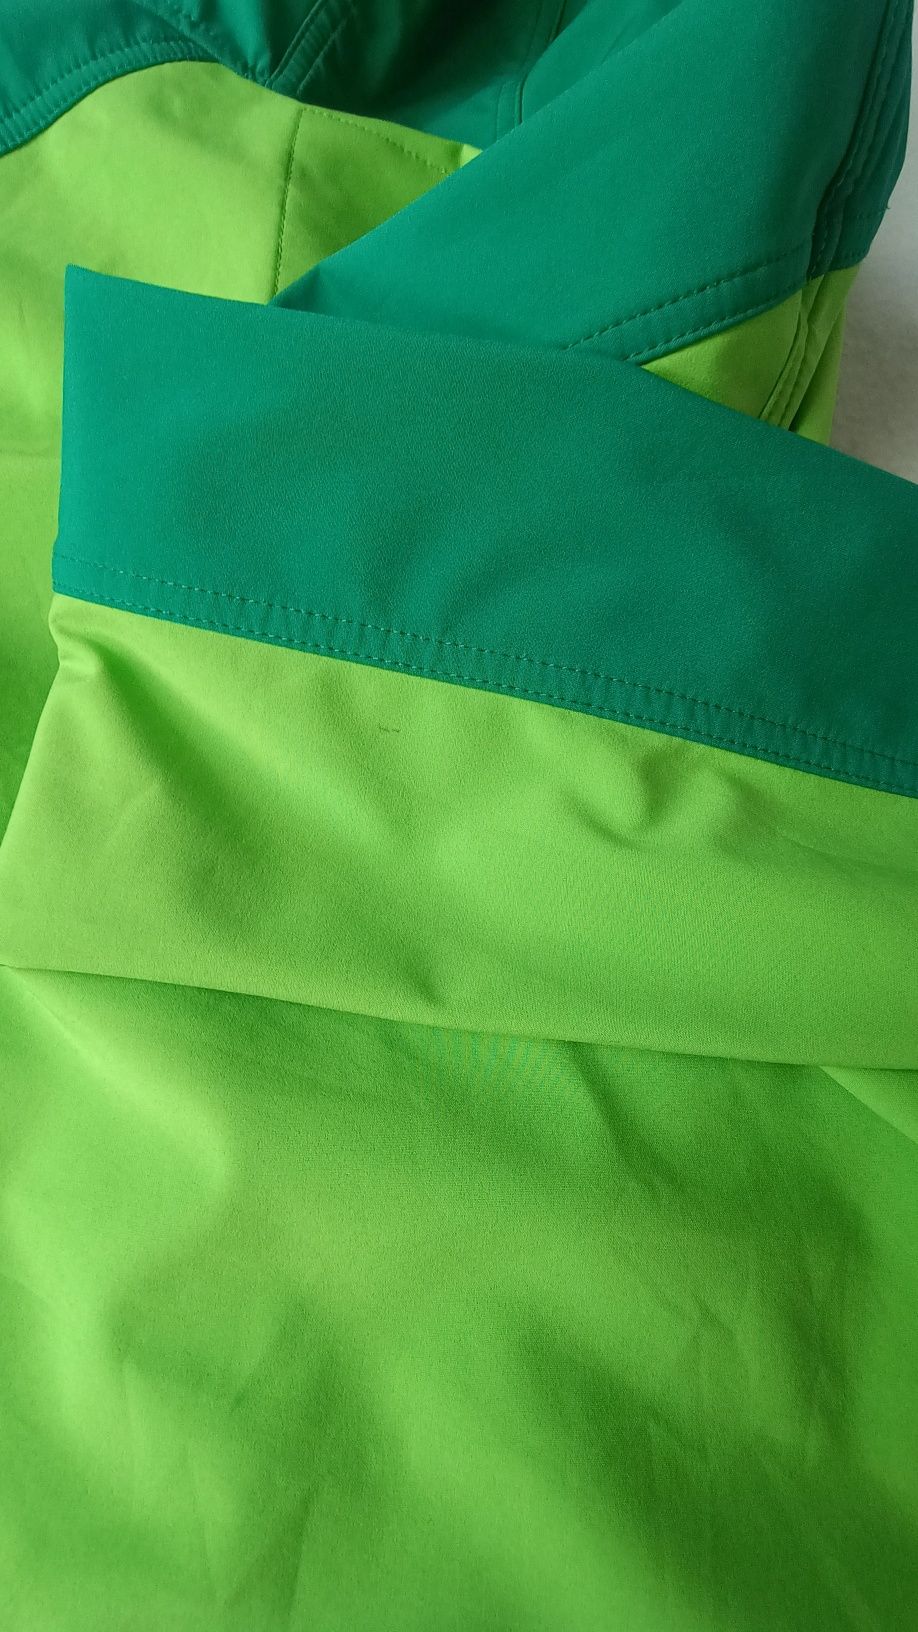 Zielona kurtka typu Softshel dziecięca, Iguana, rozmiar 152